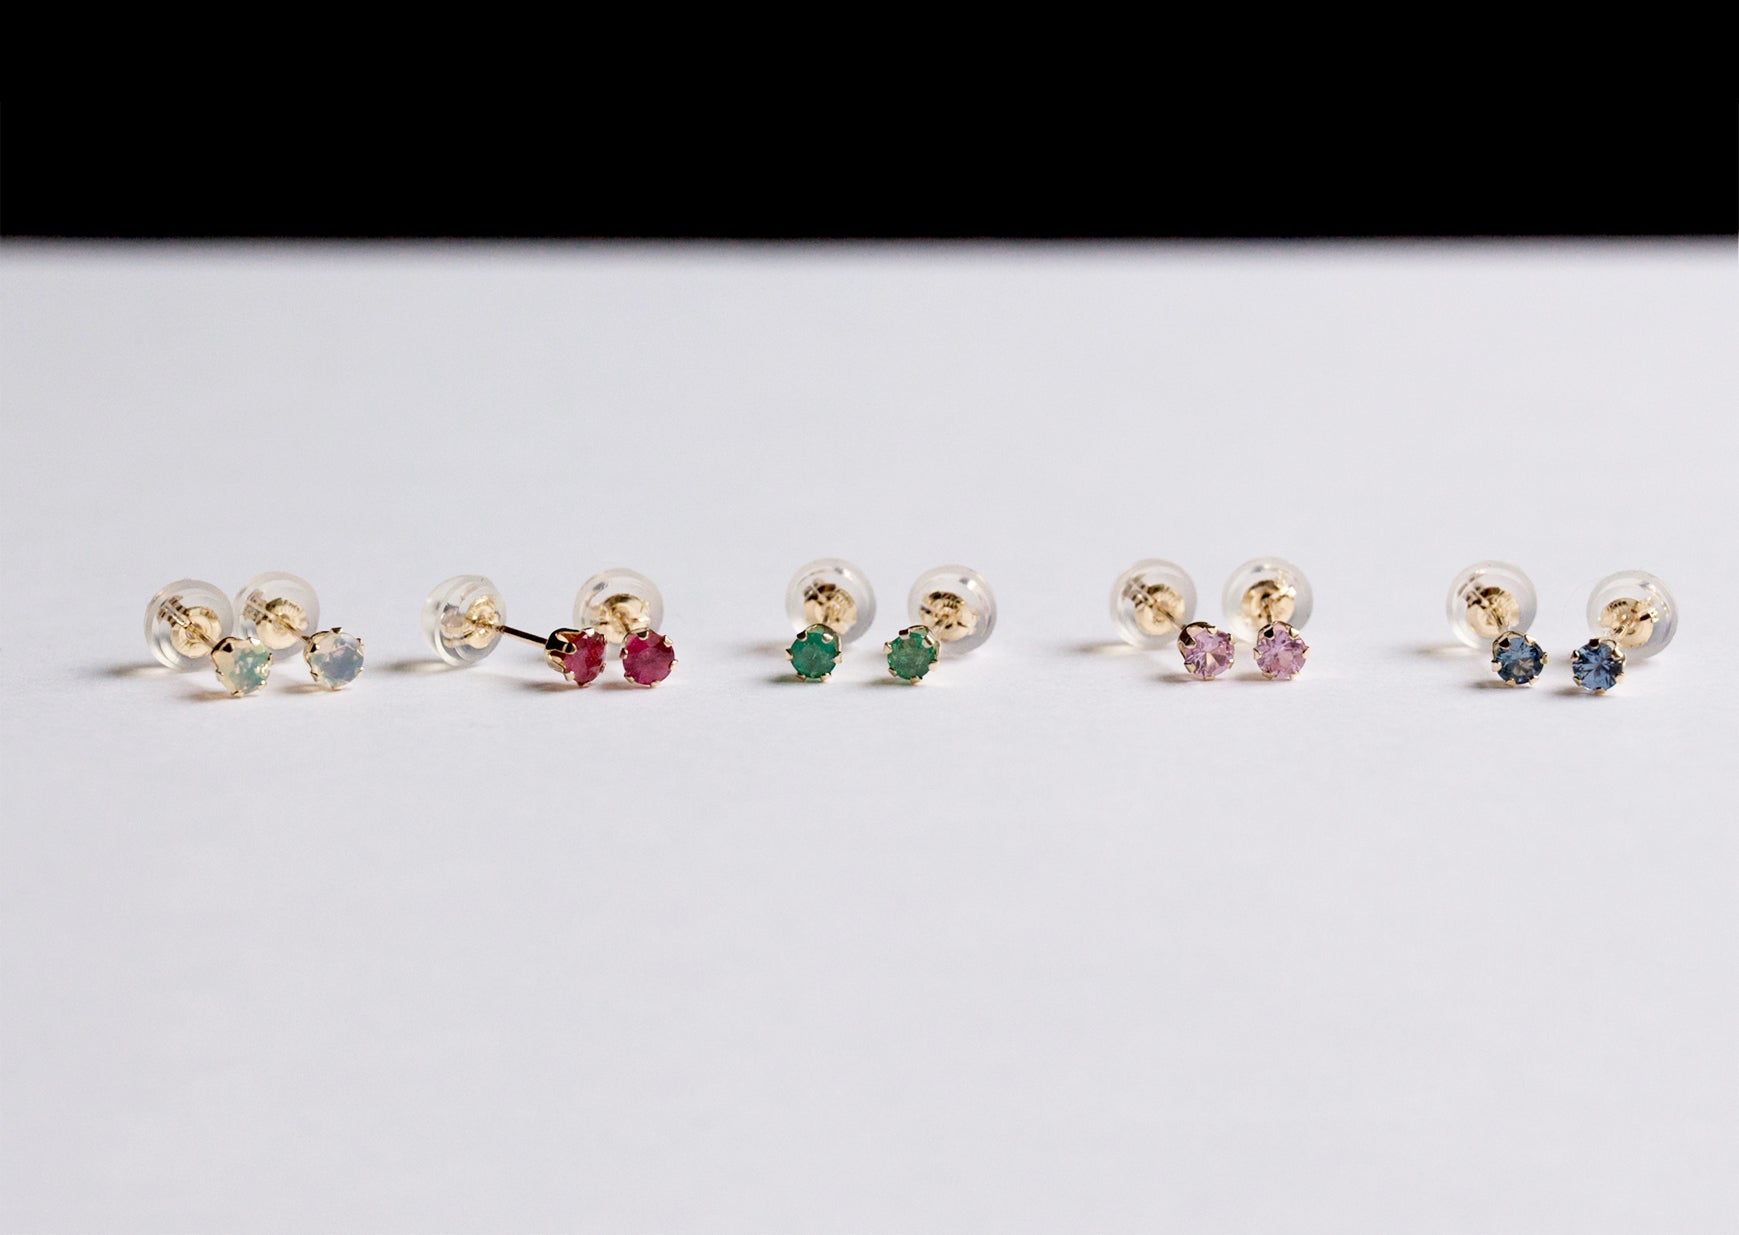 K10 jewelry stud earrings